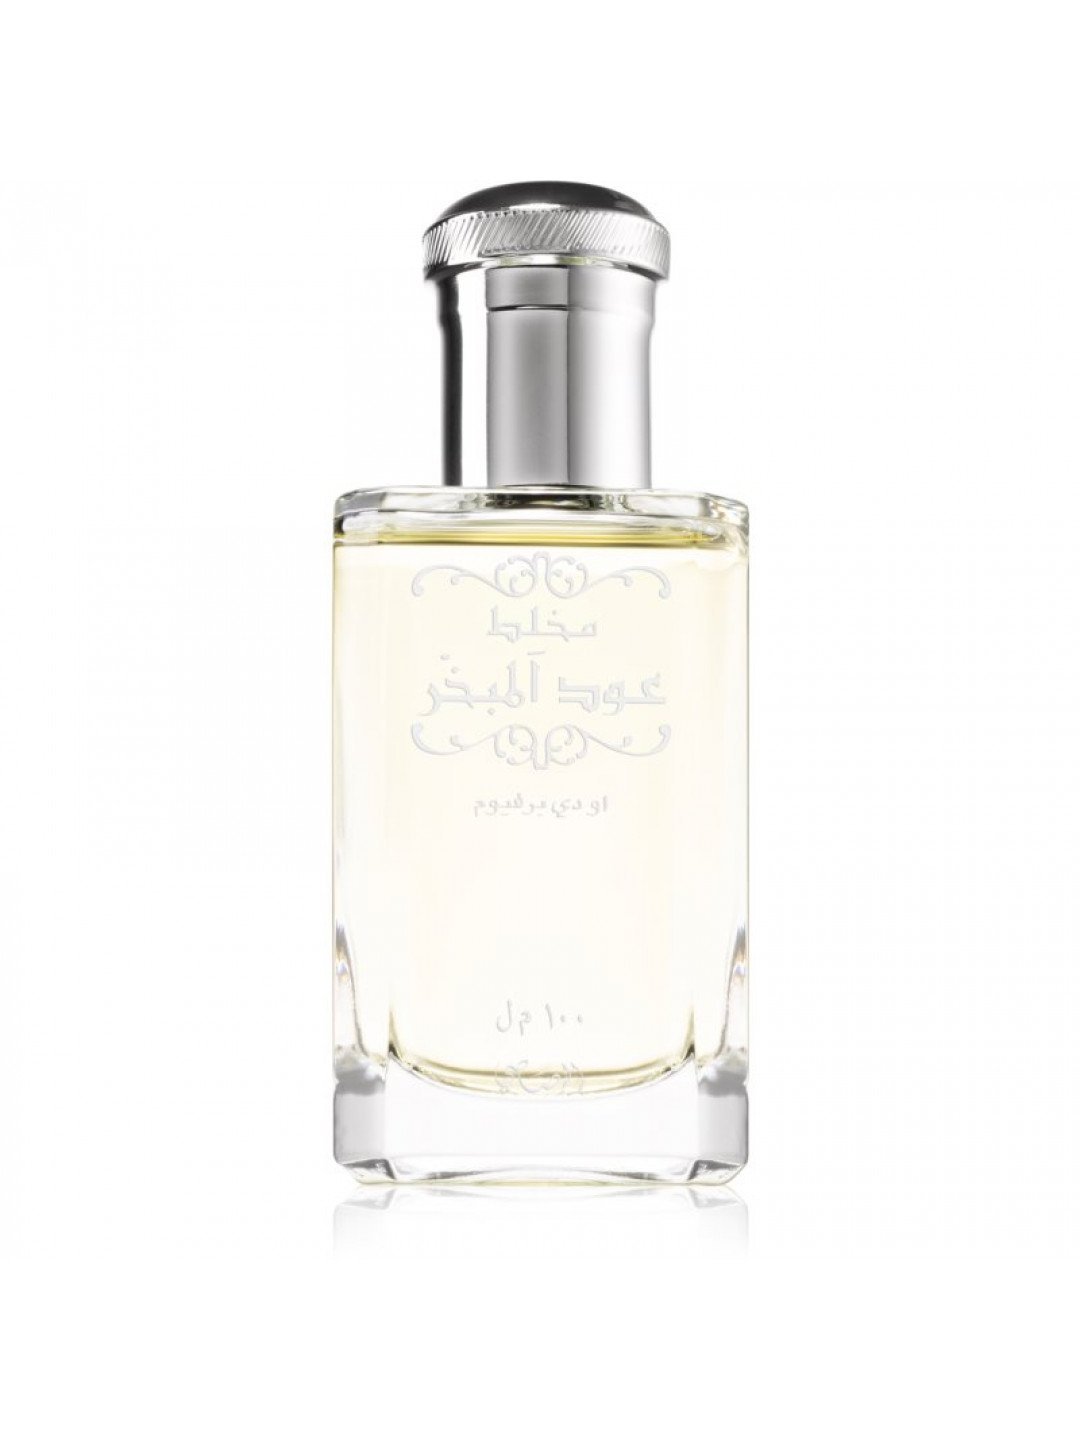 Rasasi Mukhallat Oudh Al Mubakhar parfémovaná voda unisex 100 ml